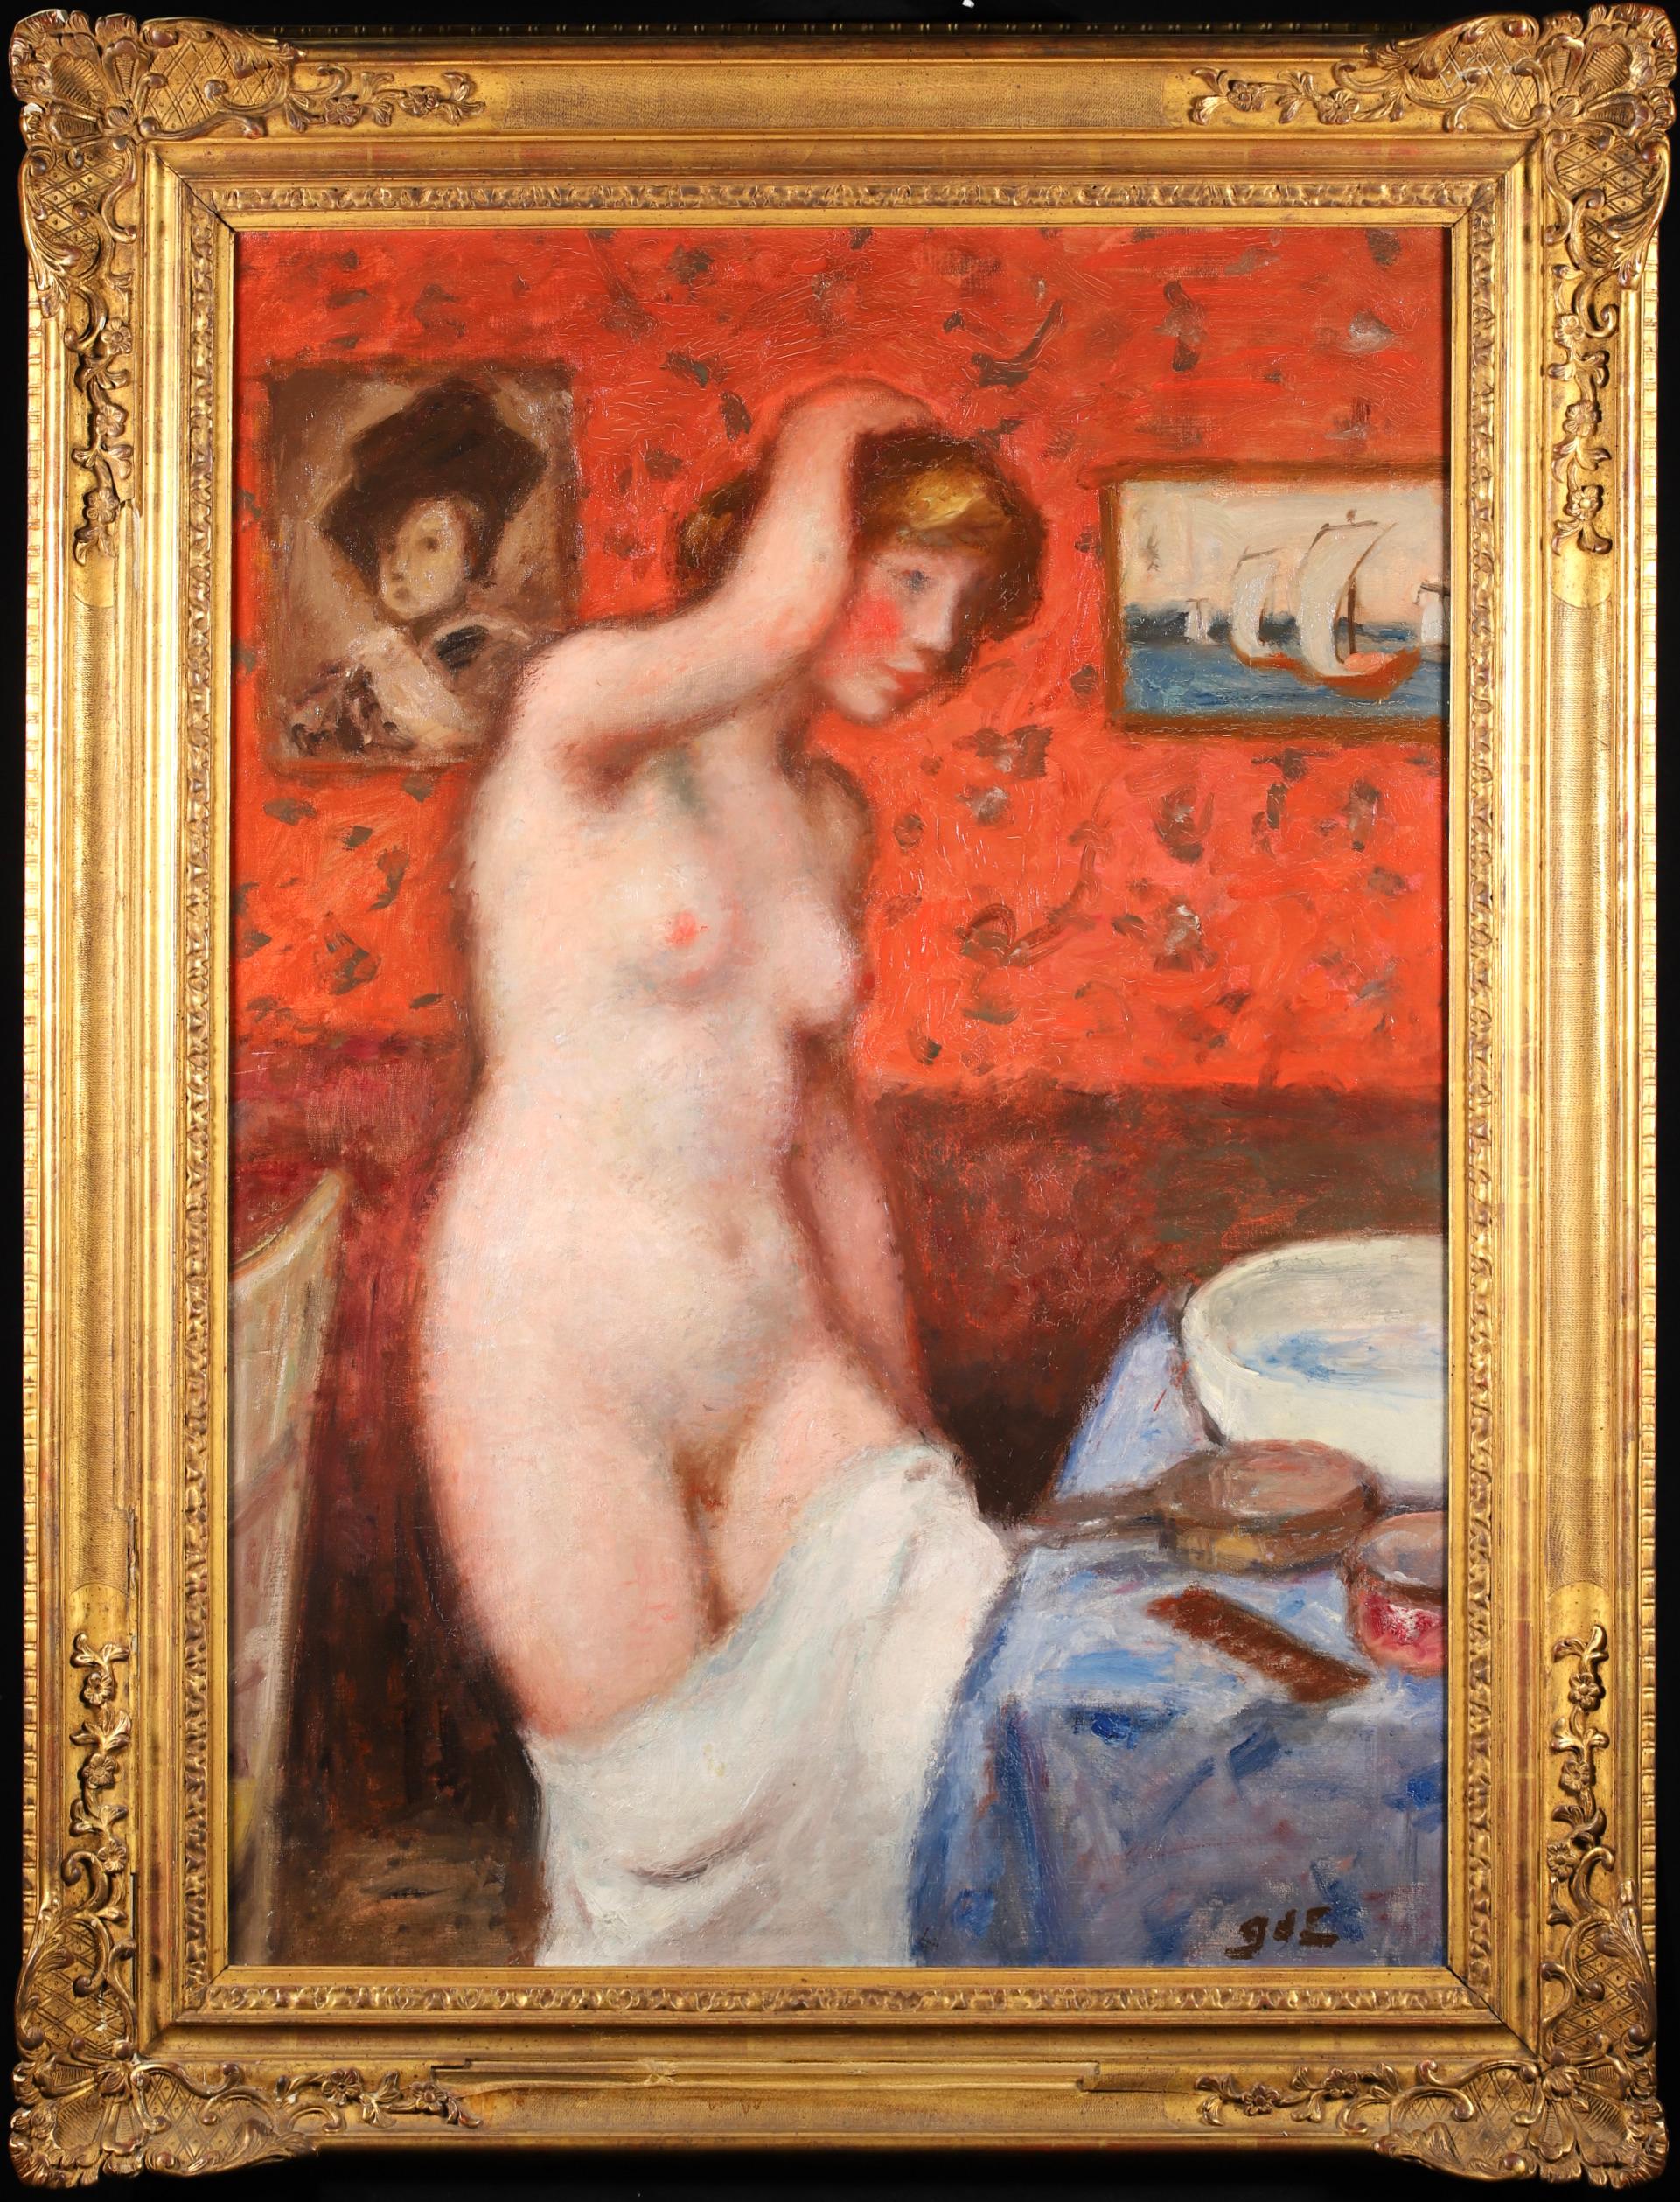 Signiertes Öl auf Original-Leinwand Akt circa 1914 von Französisch post impressionistischen Maler Georges D'espagnat. Das Werk stellt eine nackte Frau dar, die in einem Boudoir neben einem Waschbecken steht. 

Unterschrift:
Signiert unten